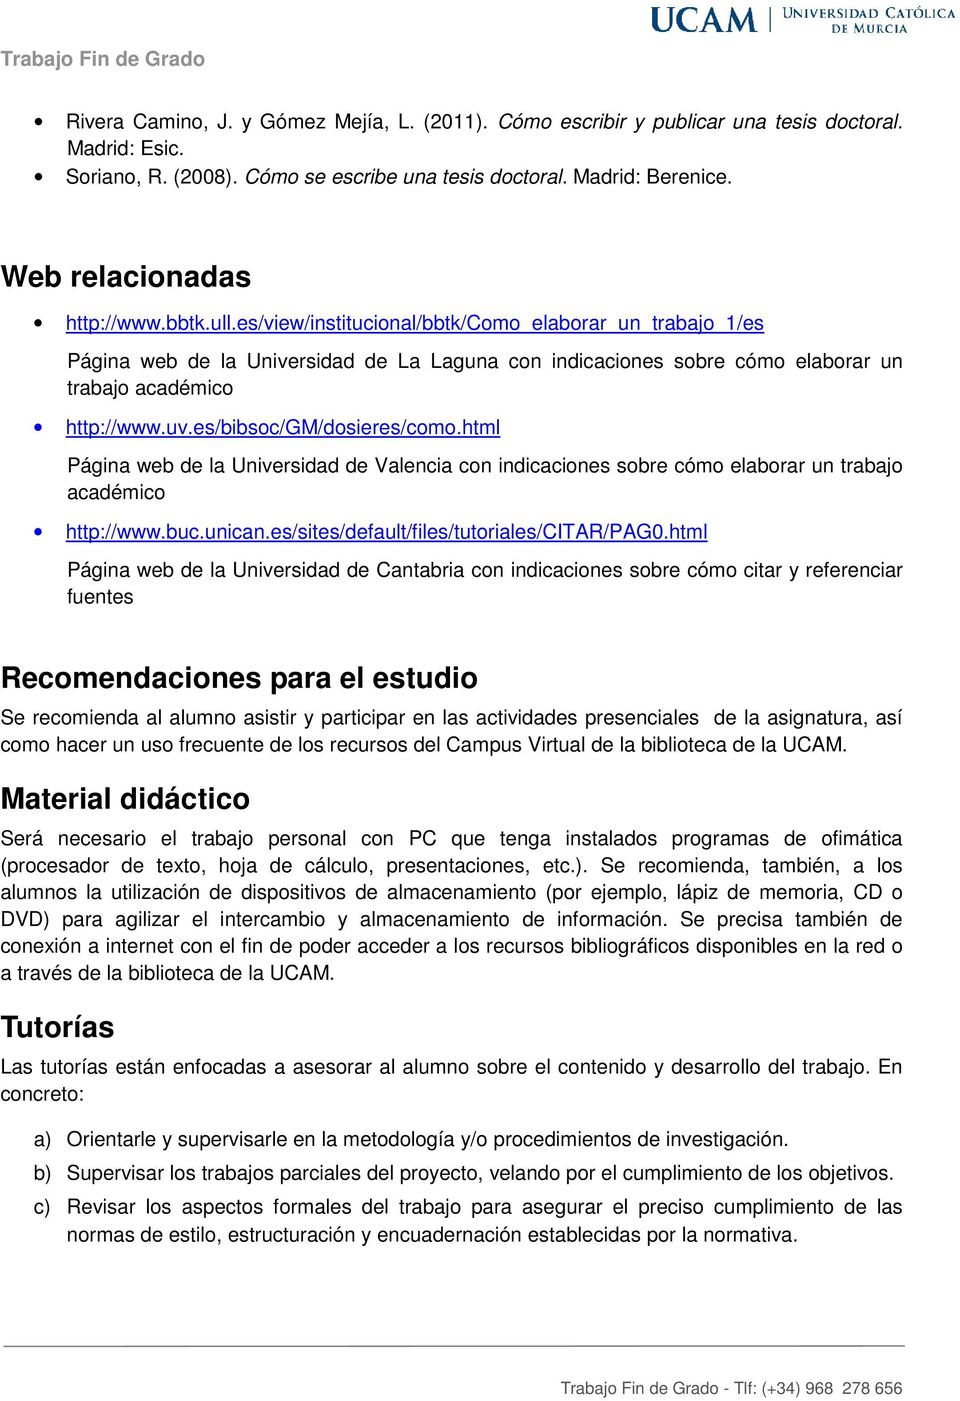 es/view/institucional/bbtk/como_elaborar_un_trabajo_1/es Página web de la Universidad de La Laguna con indicaciones sobre cómo elaborar un trabajo académico http://www.uv.es/bibsoc/gm/dosieres/como.